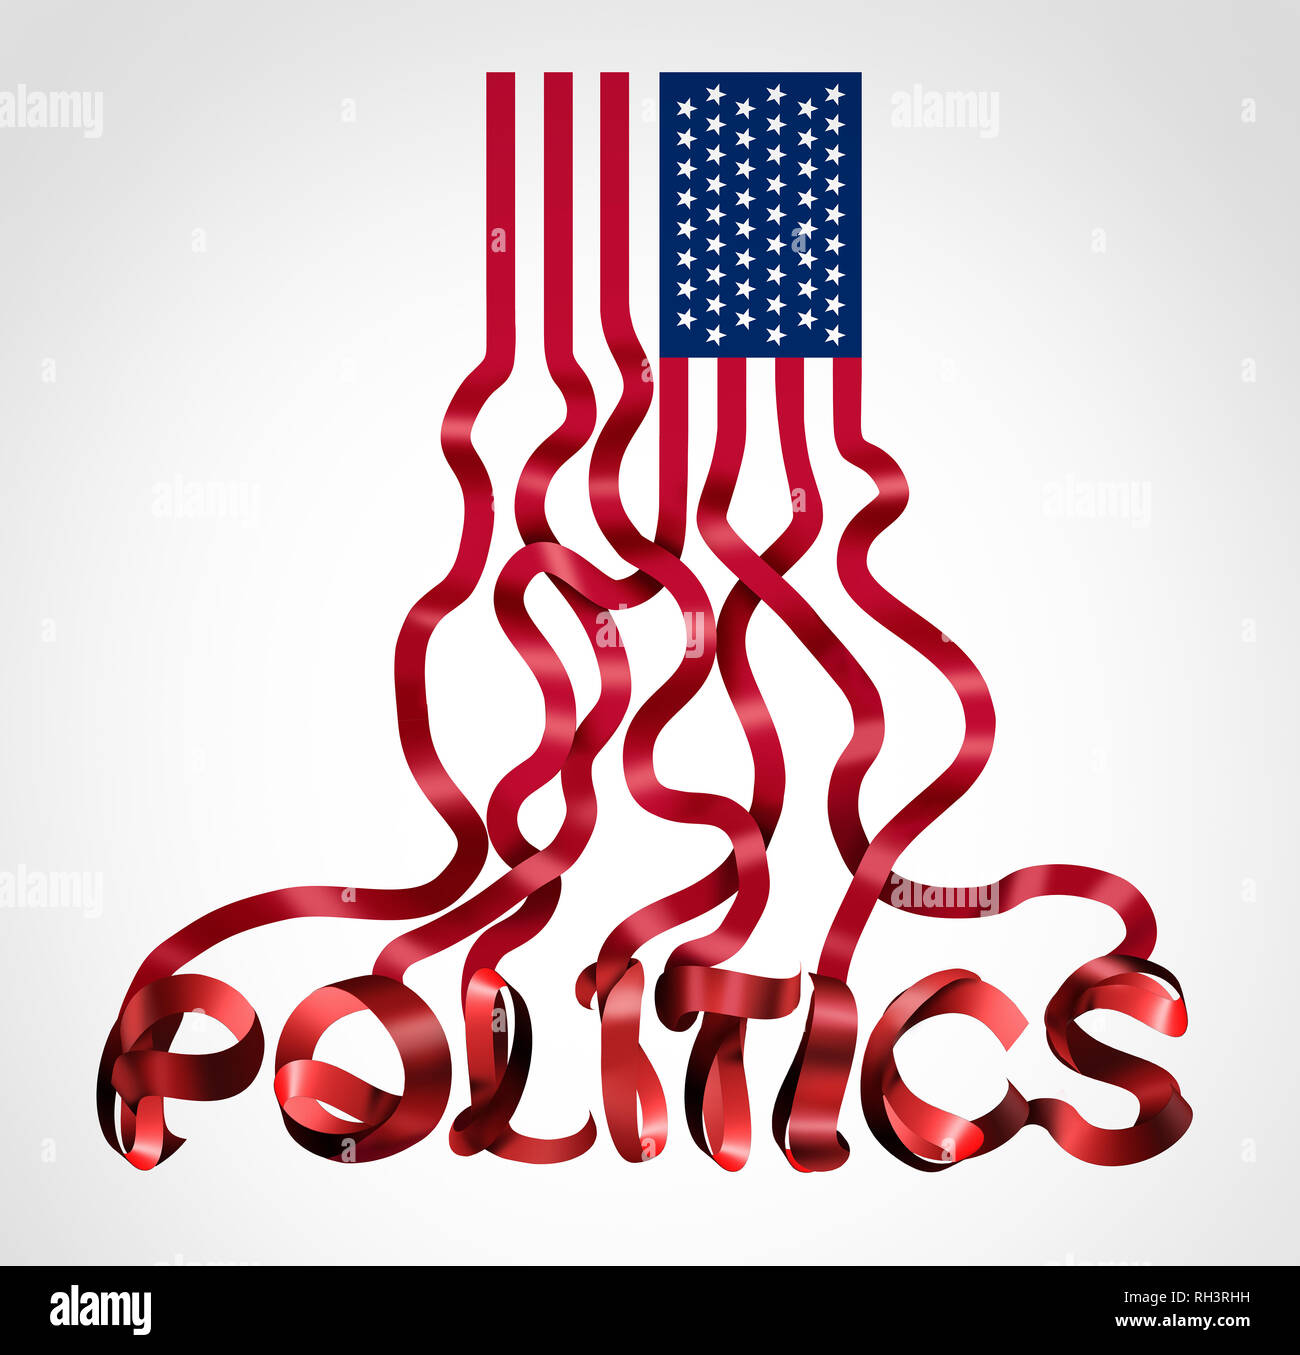 Noi la politica e il governo degli Stati Uniti simbolo politico come una bandiera americana a forma di testo come una icona di creative per conservatori repubblicani. Foto Stock